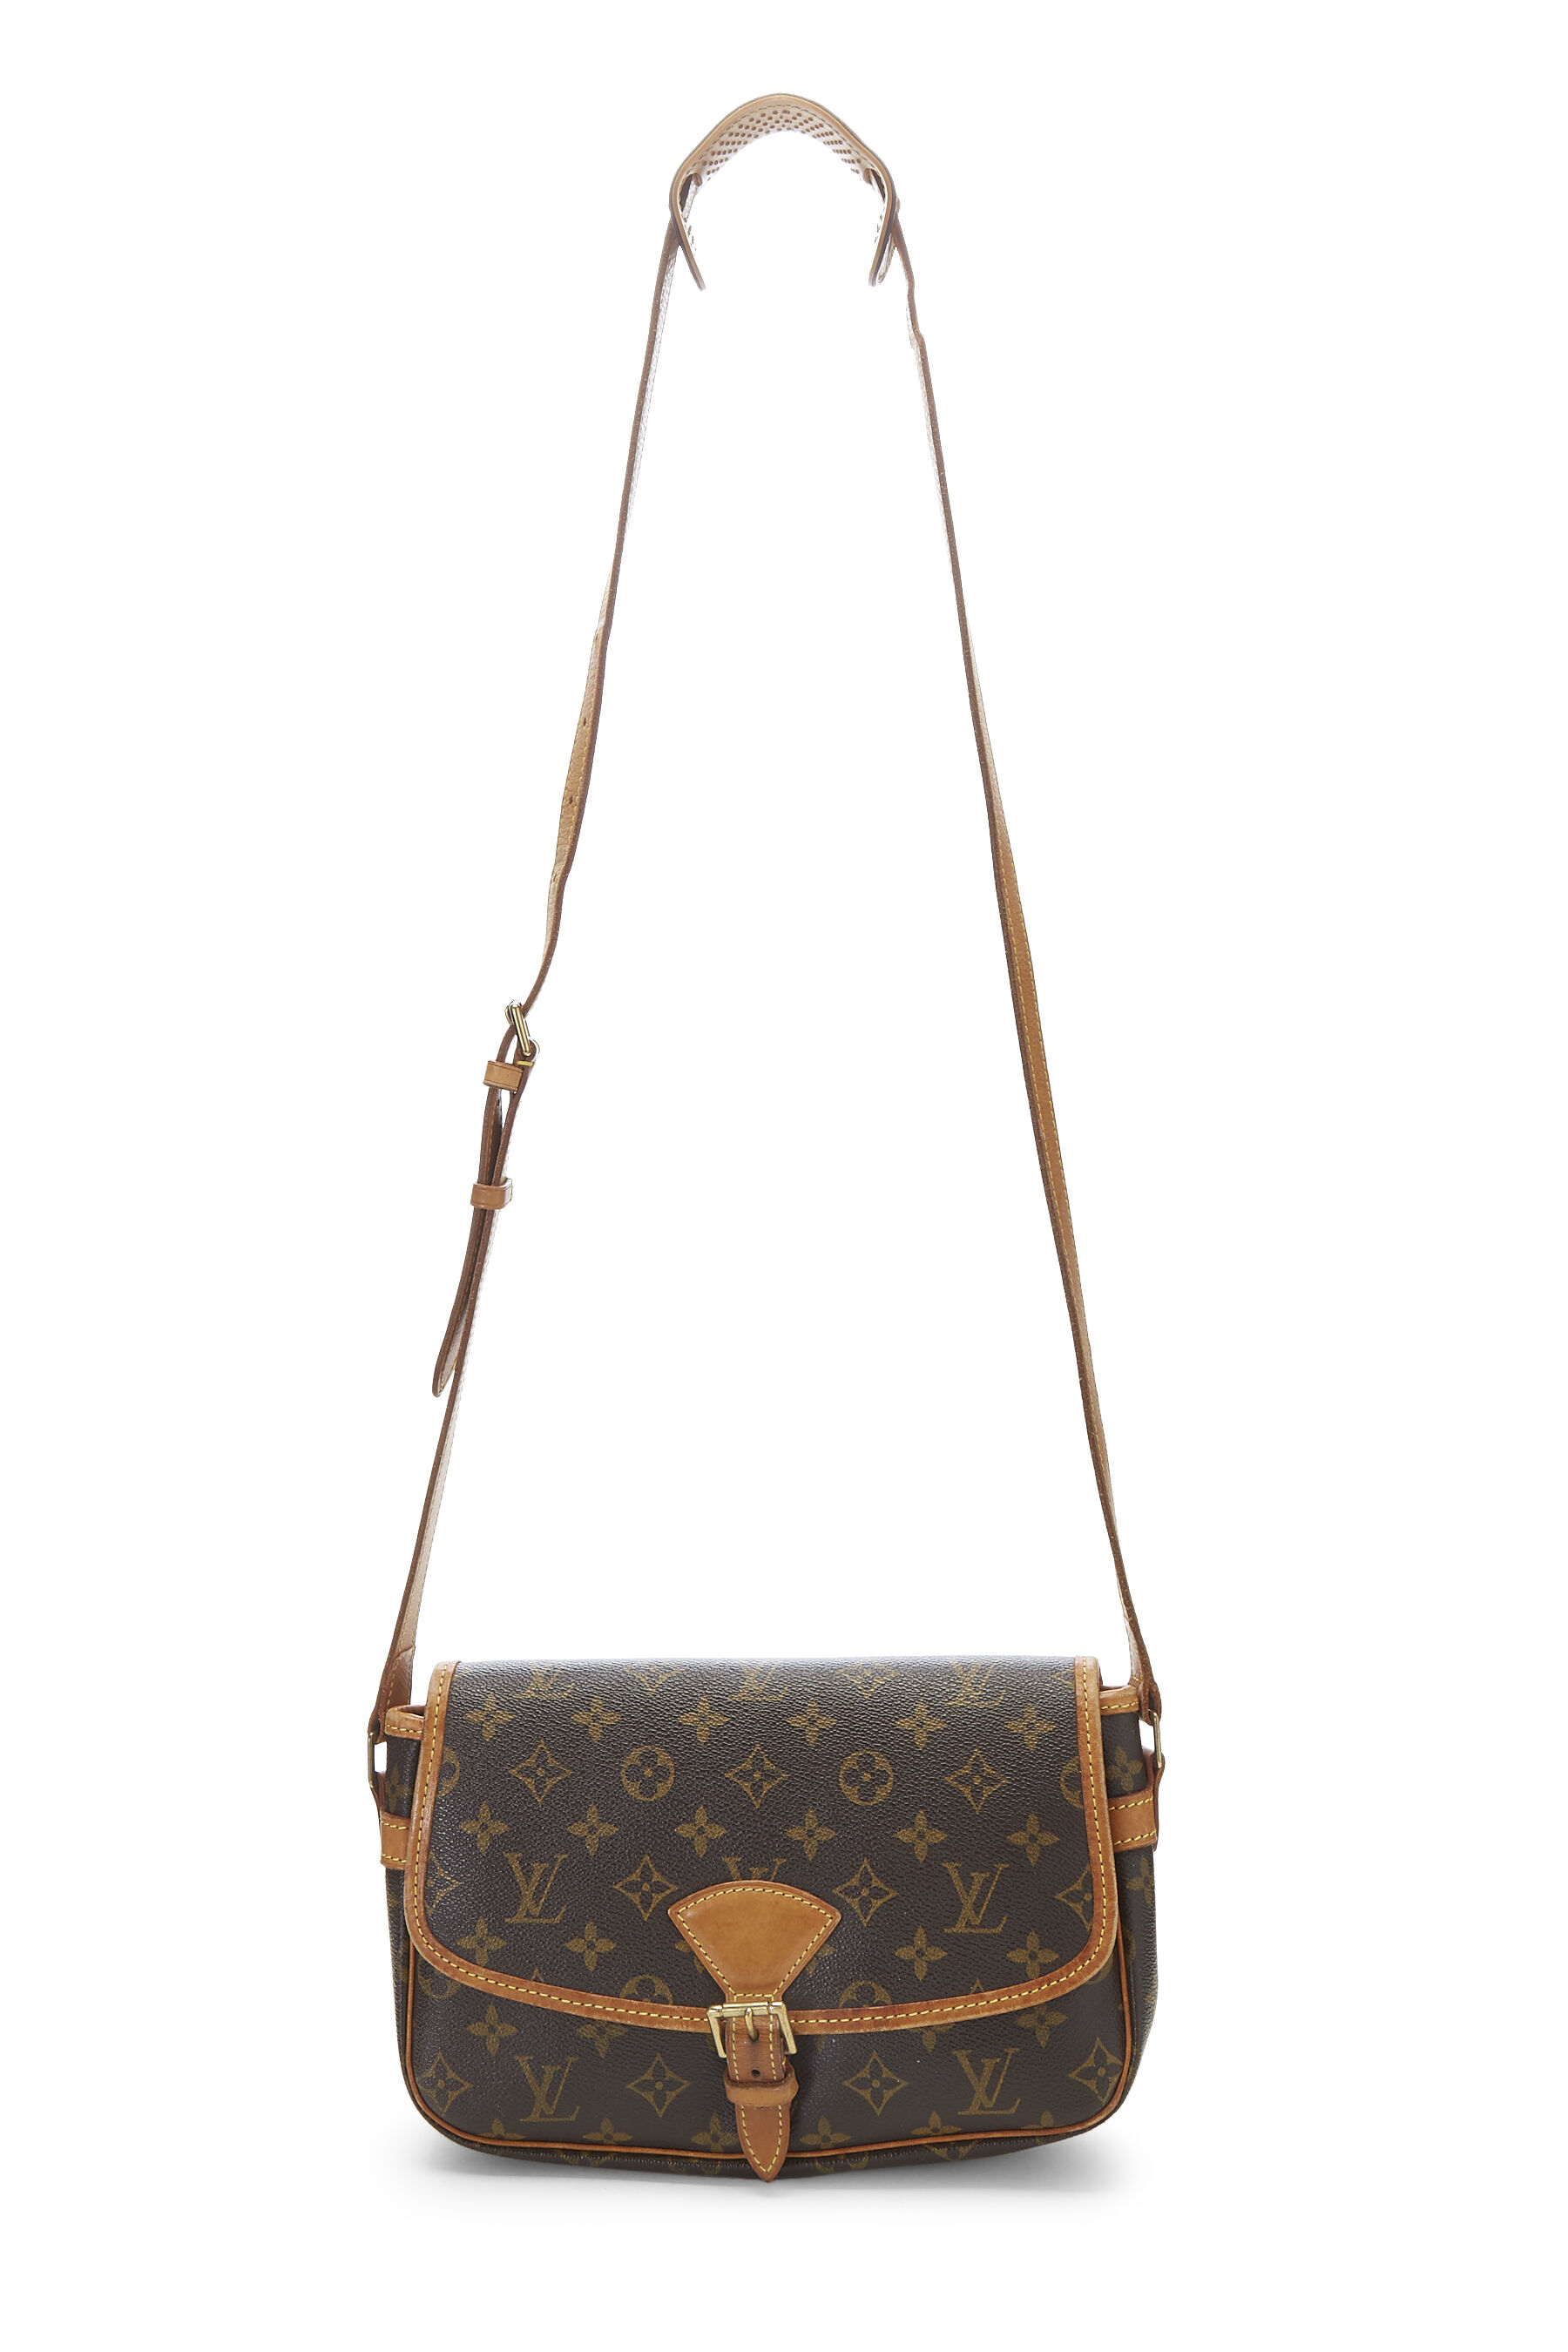 Louis Vuitton 'Sologne' Bag